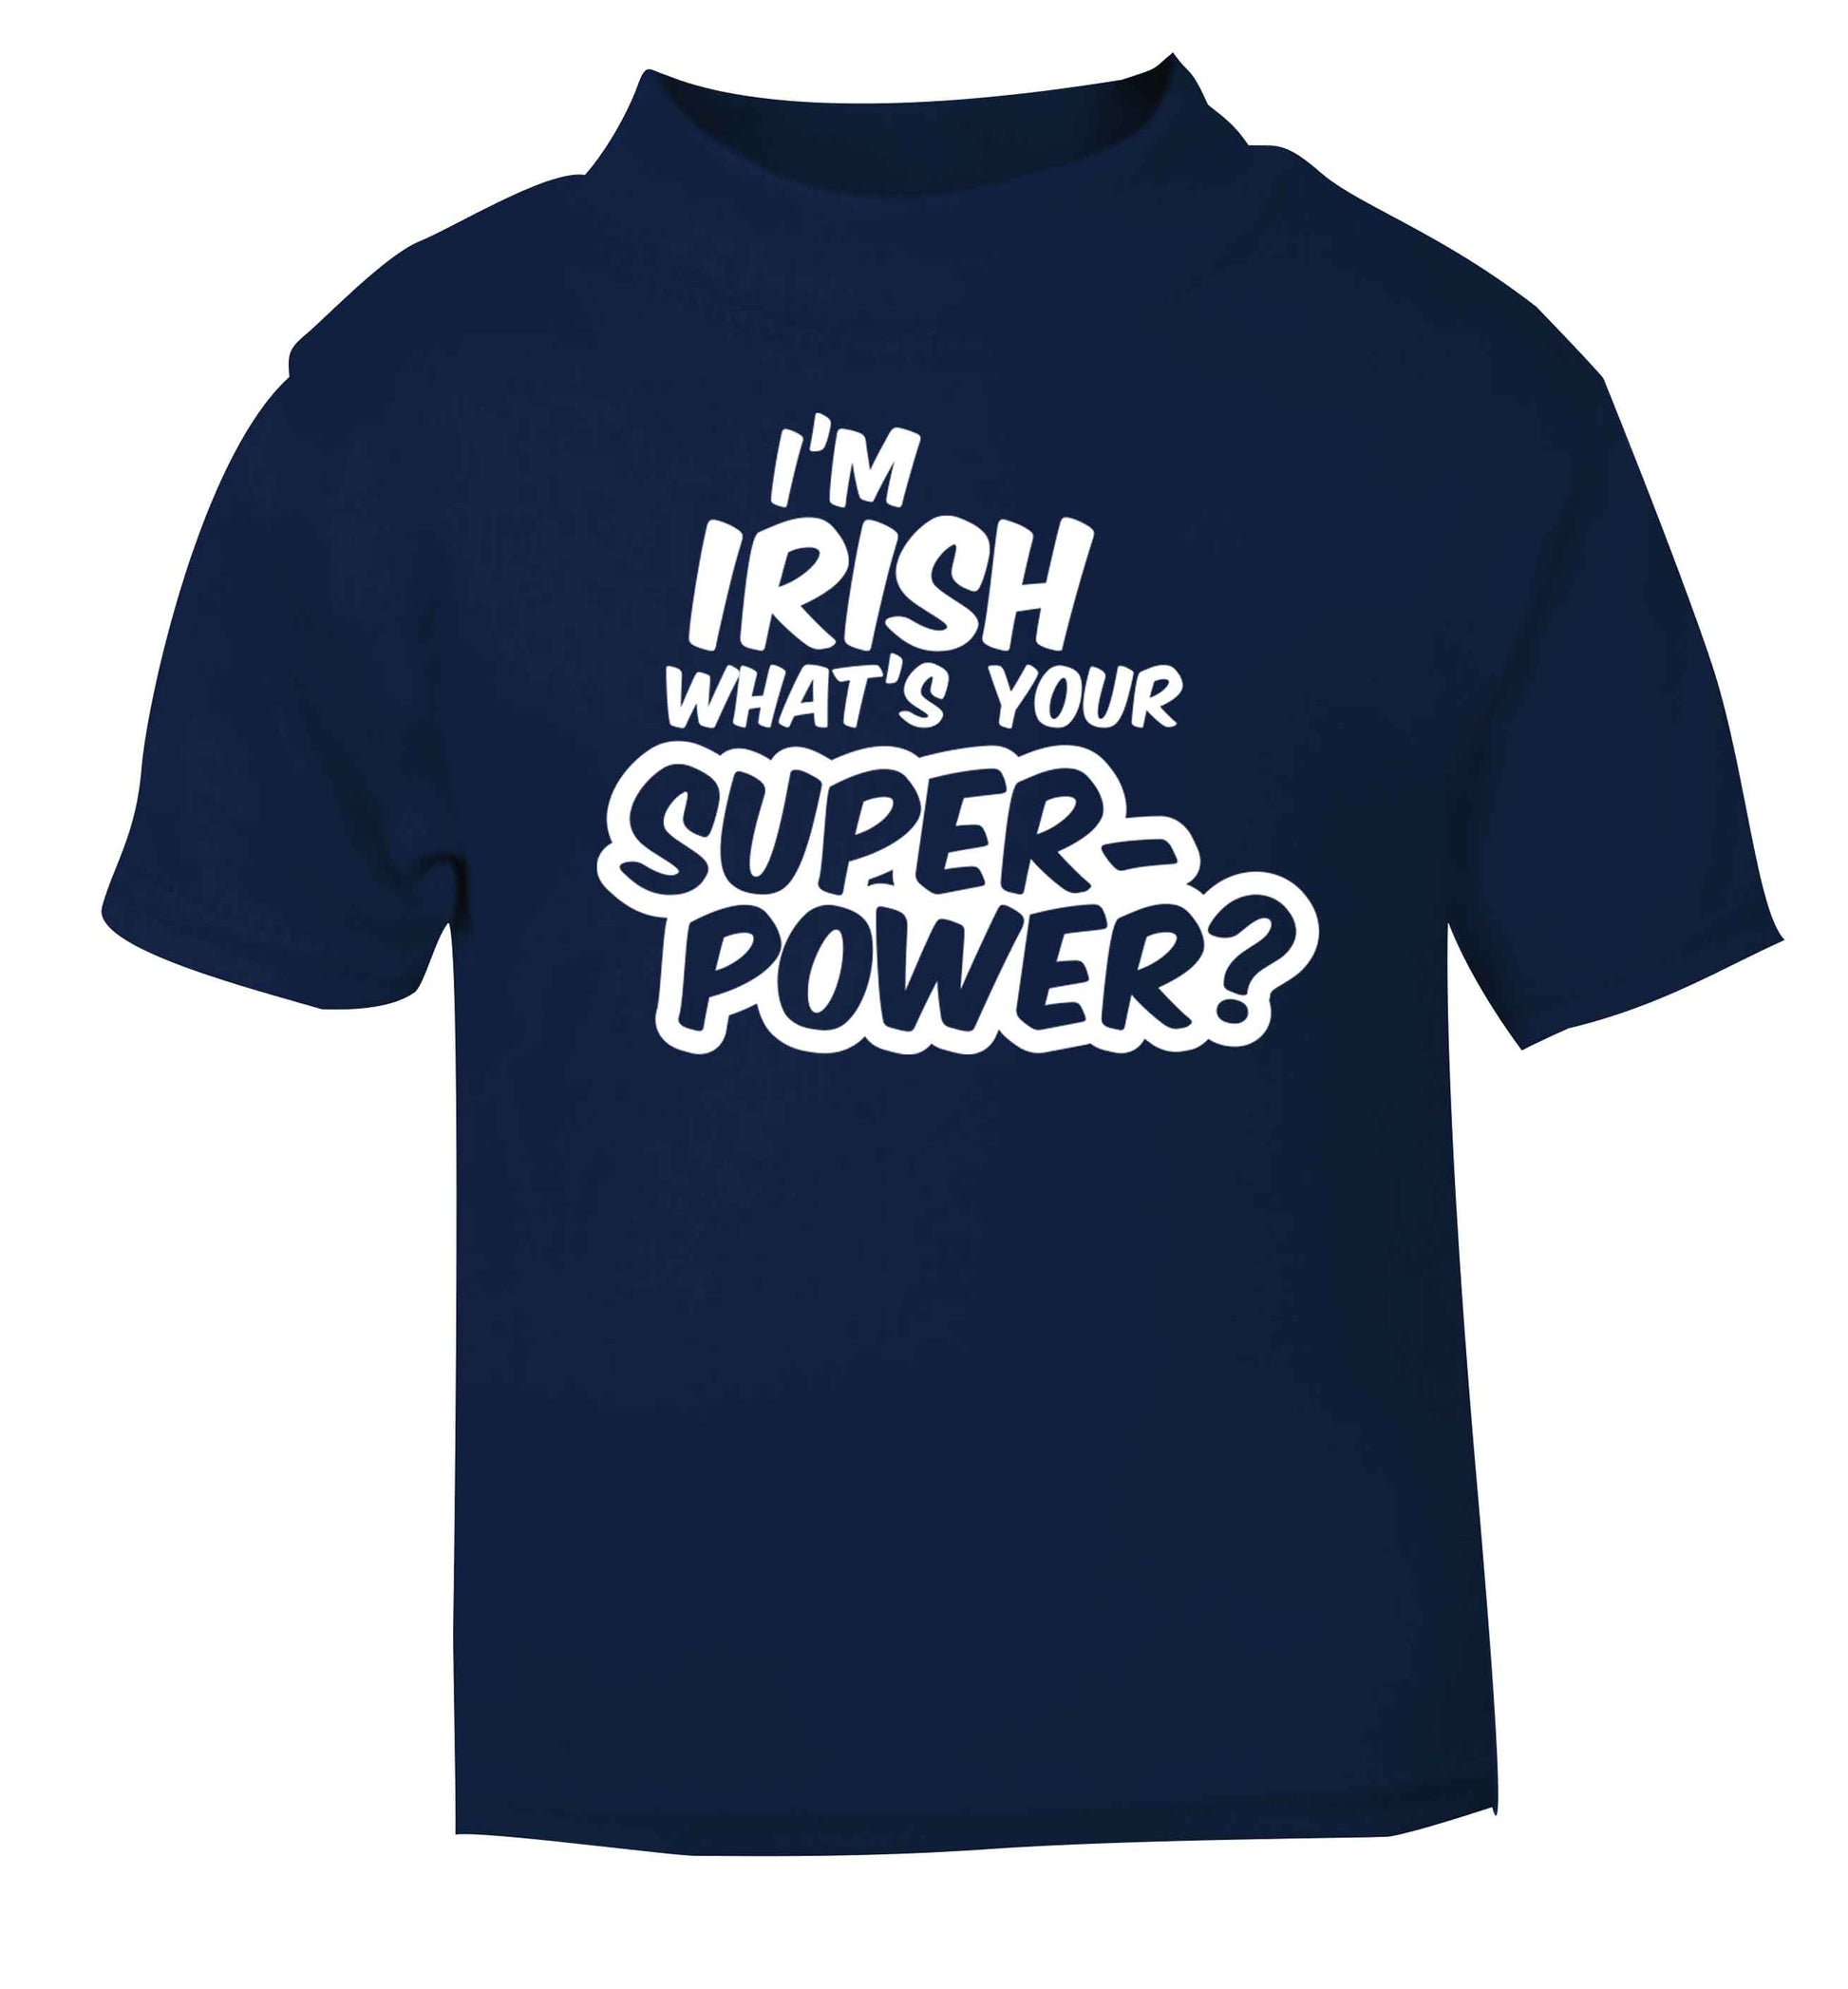 I'm Irish what's your superpower? navy baby toddler Tshirt 2 Years